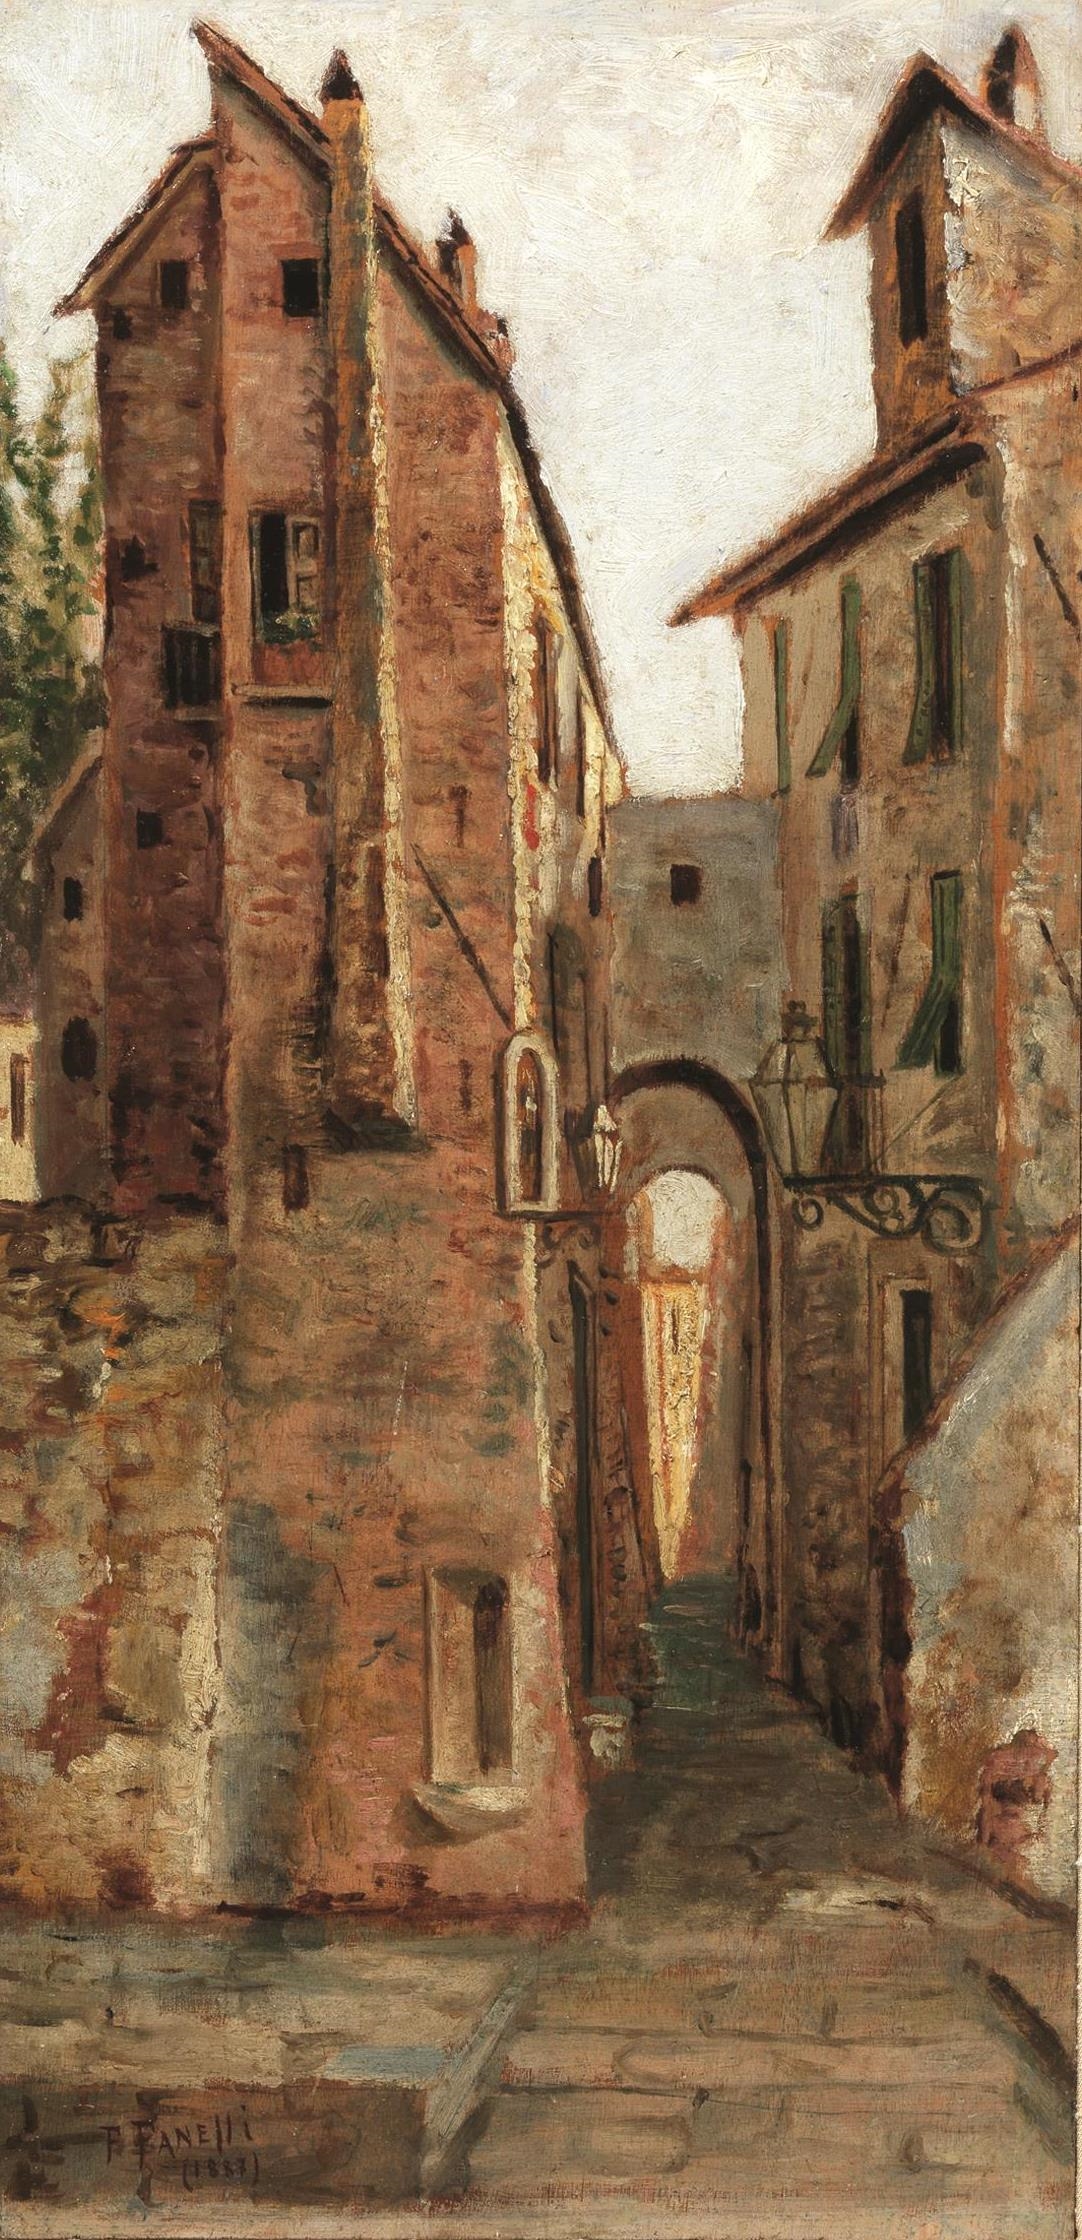 VICOLO SAN CARLO, LUCCA by Francesco Fanelli, 1887